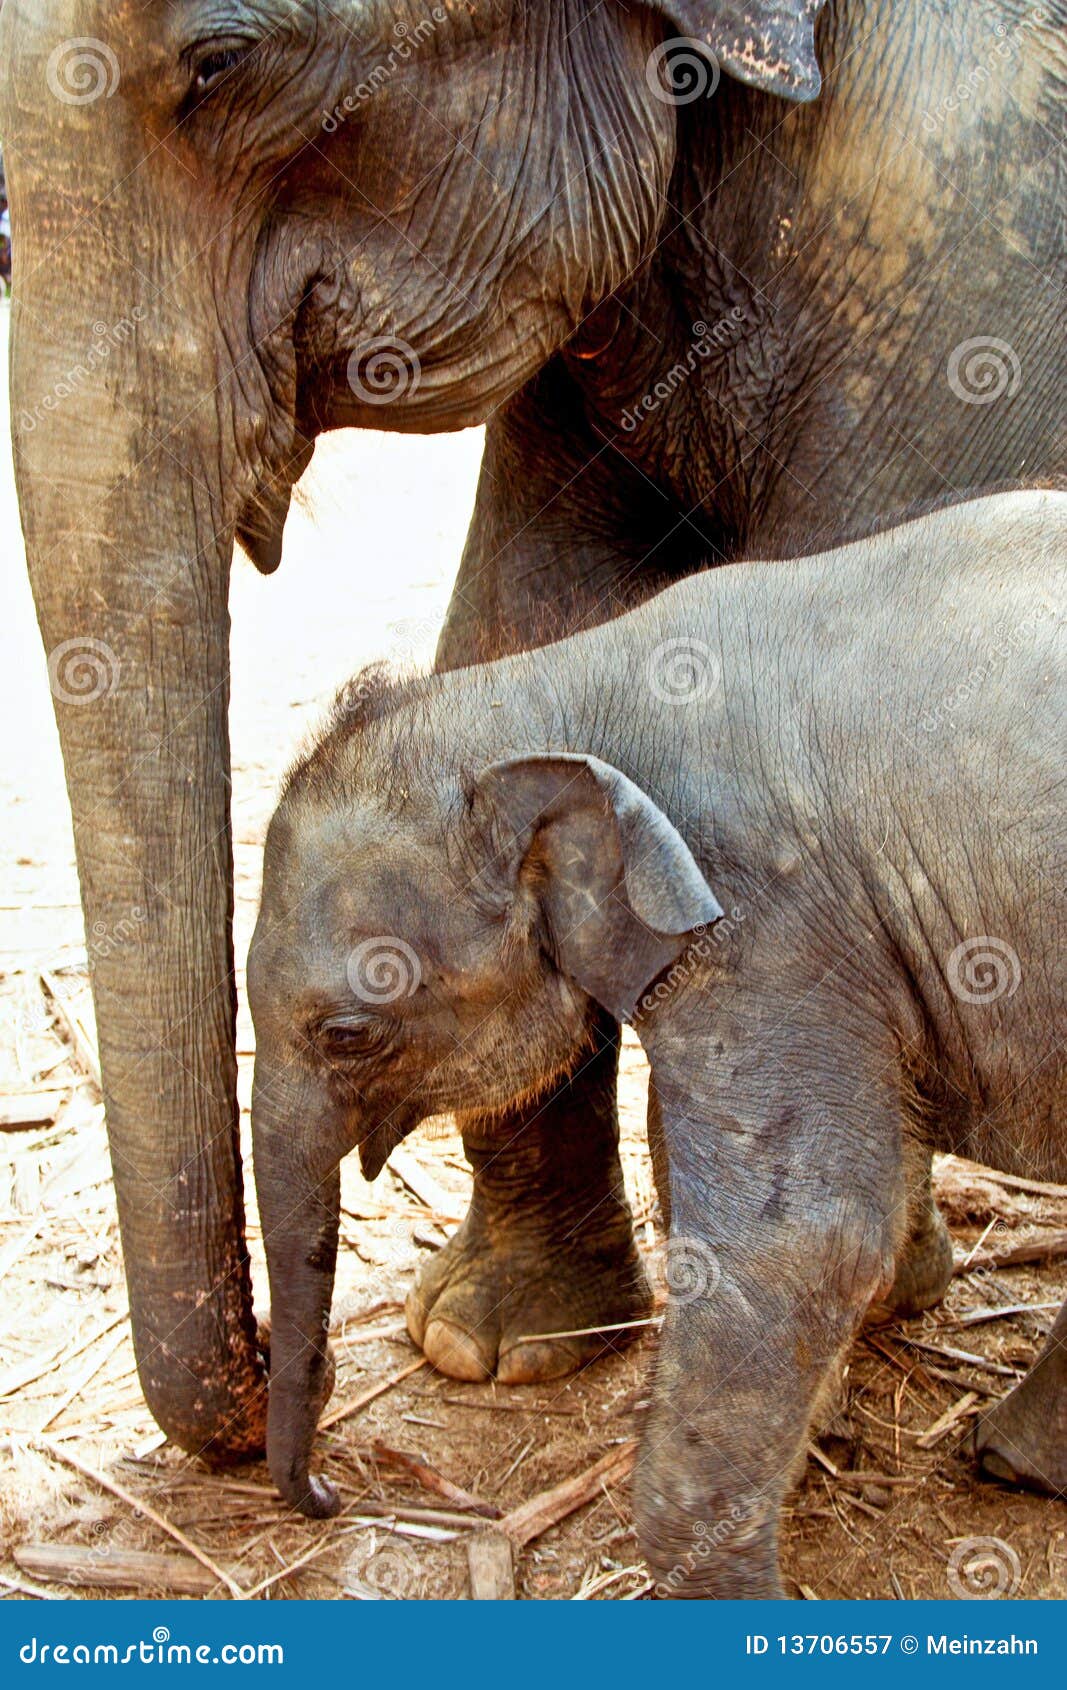 elefant family in open area